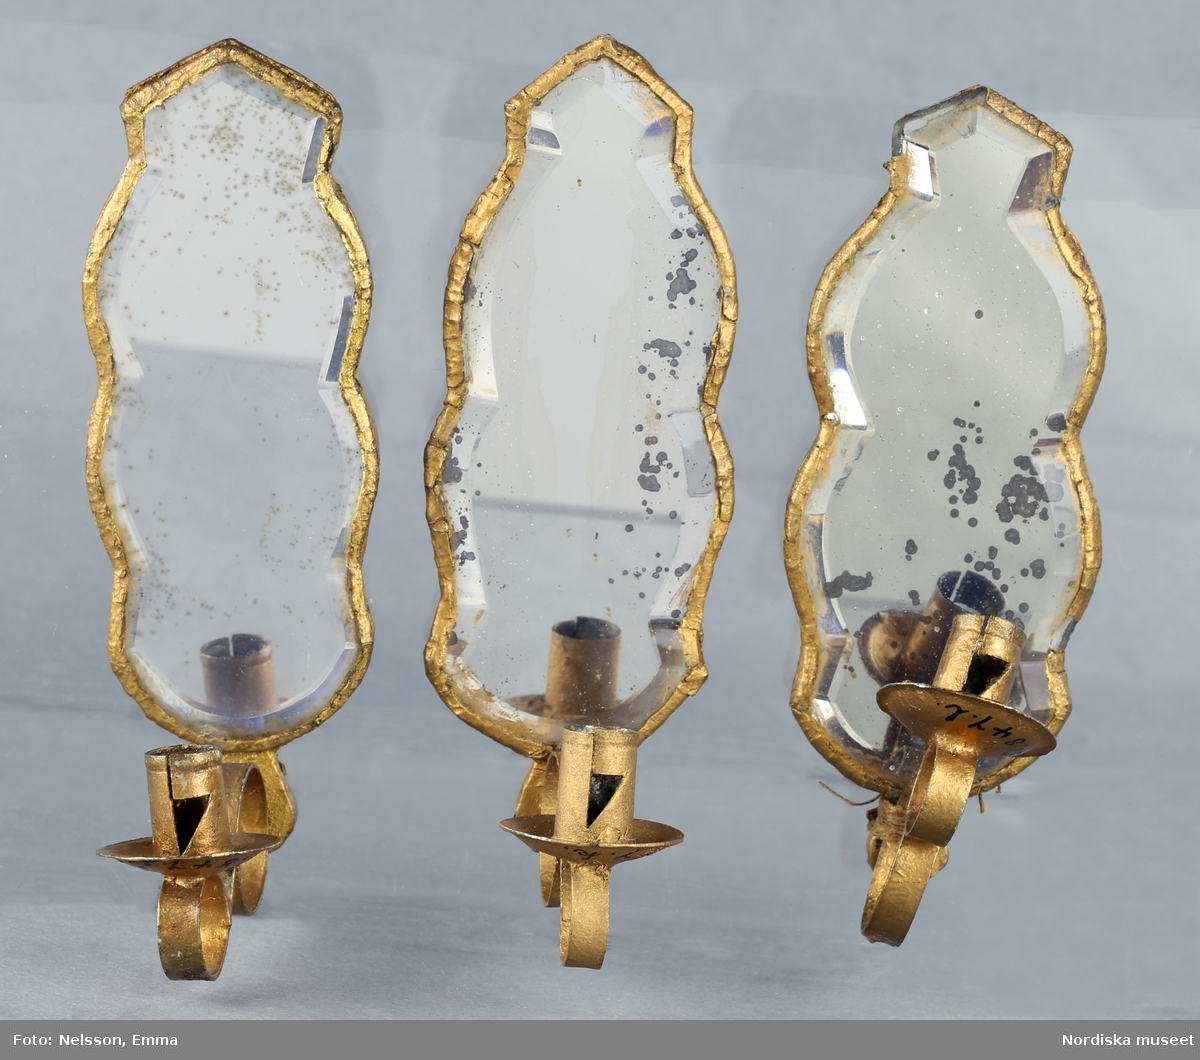 Inventering Sesam 1996-1999:
H 10,5 cm
12 st spegellampetter, konturerat spegelglas med facettslipning, bakstycke av furu. Ljusarm av ihoprullat stålband. Några glas med fläckar.
Tillhör dockskåp 151.825.
Birgitta Martinius 1996